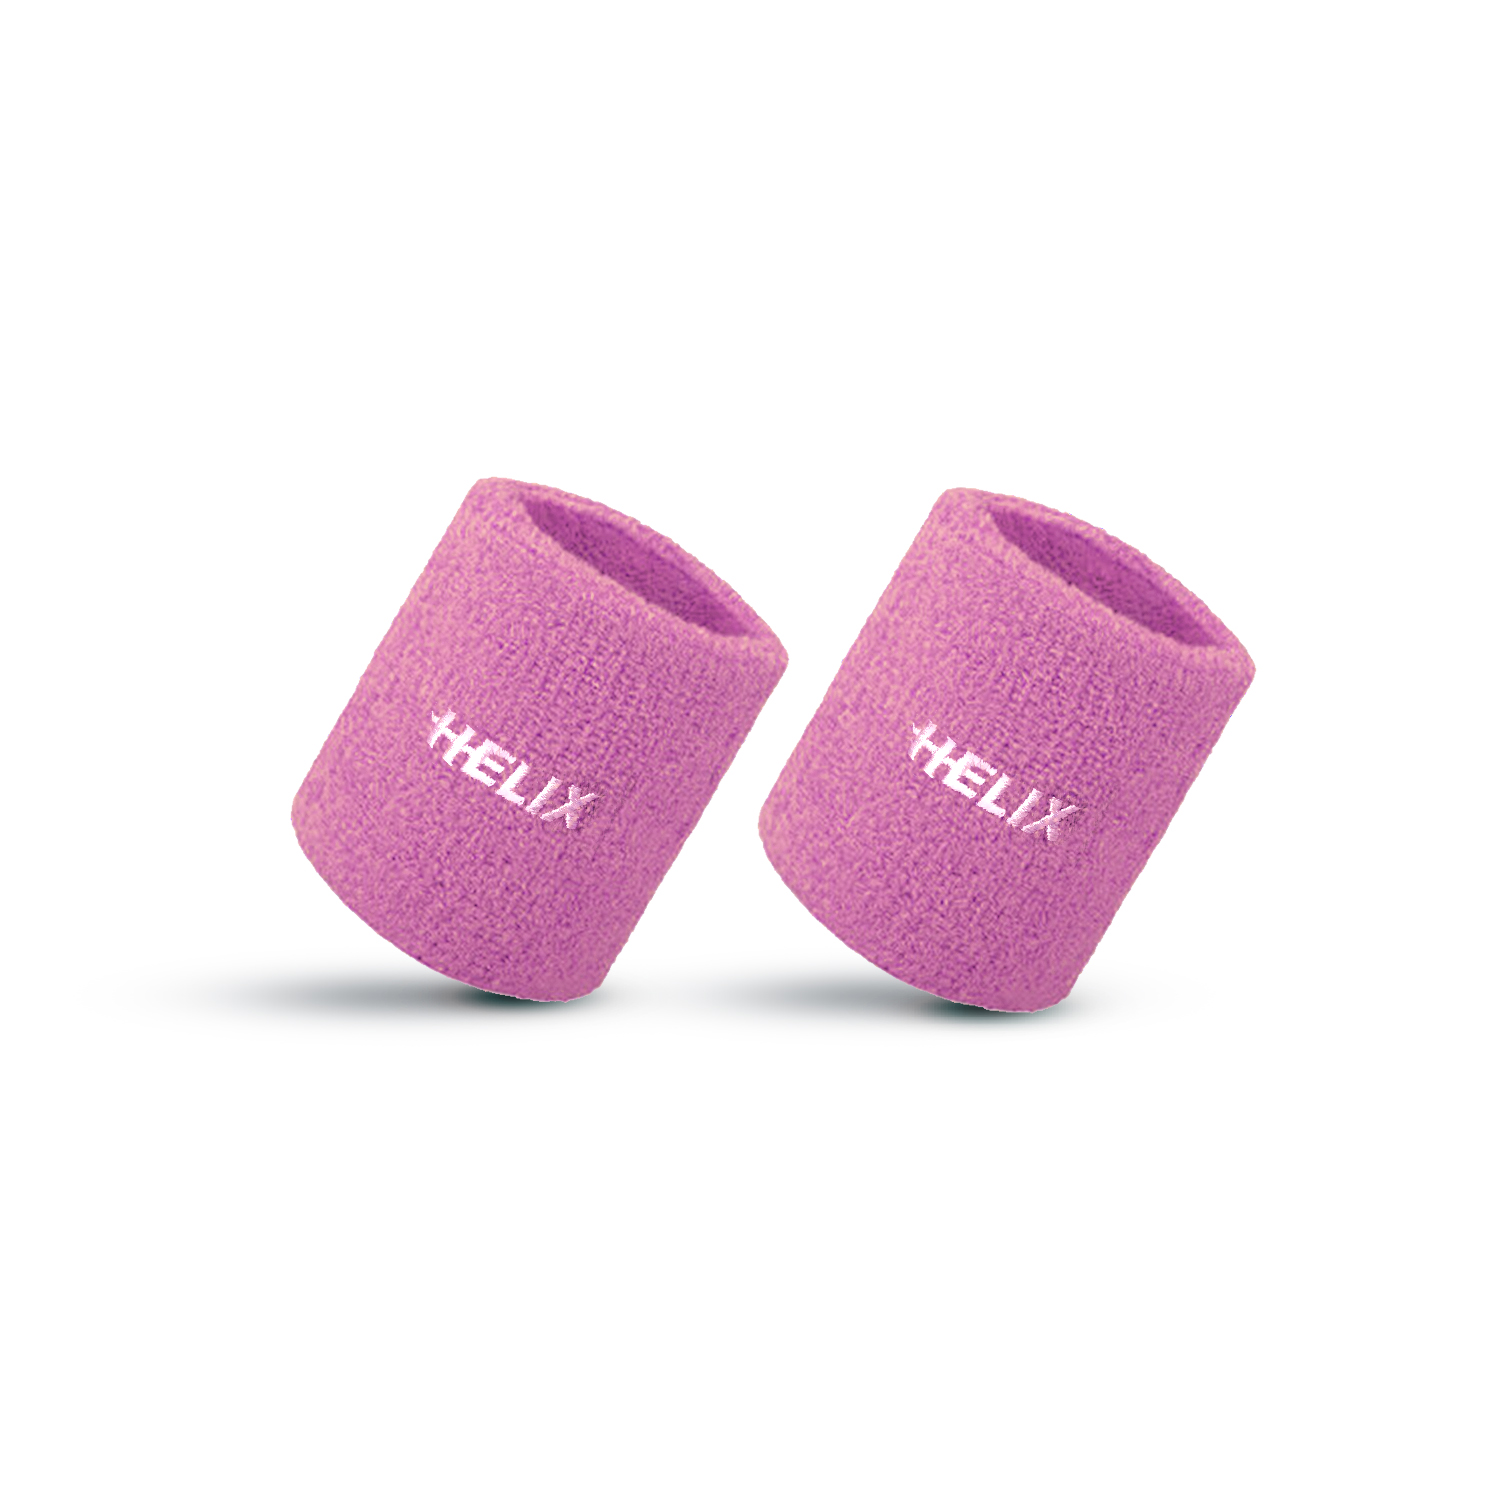 Helix Wrist Band - Light Pink